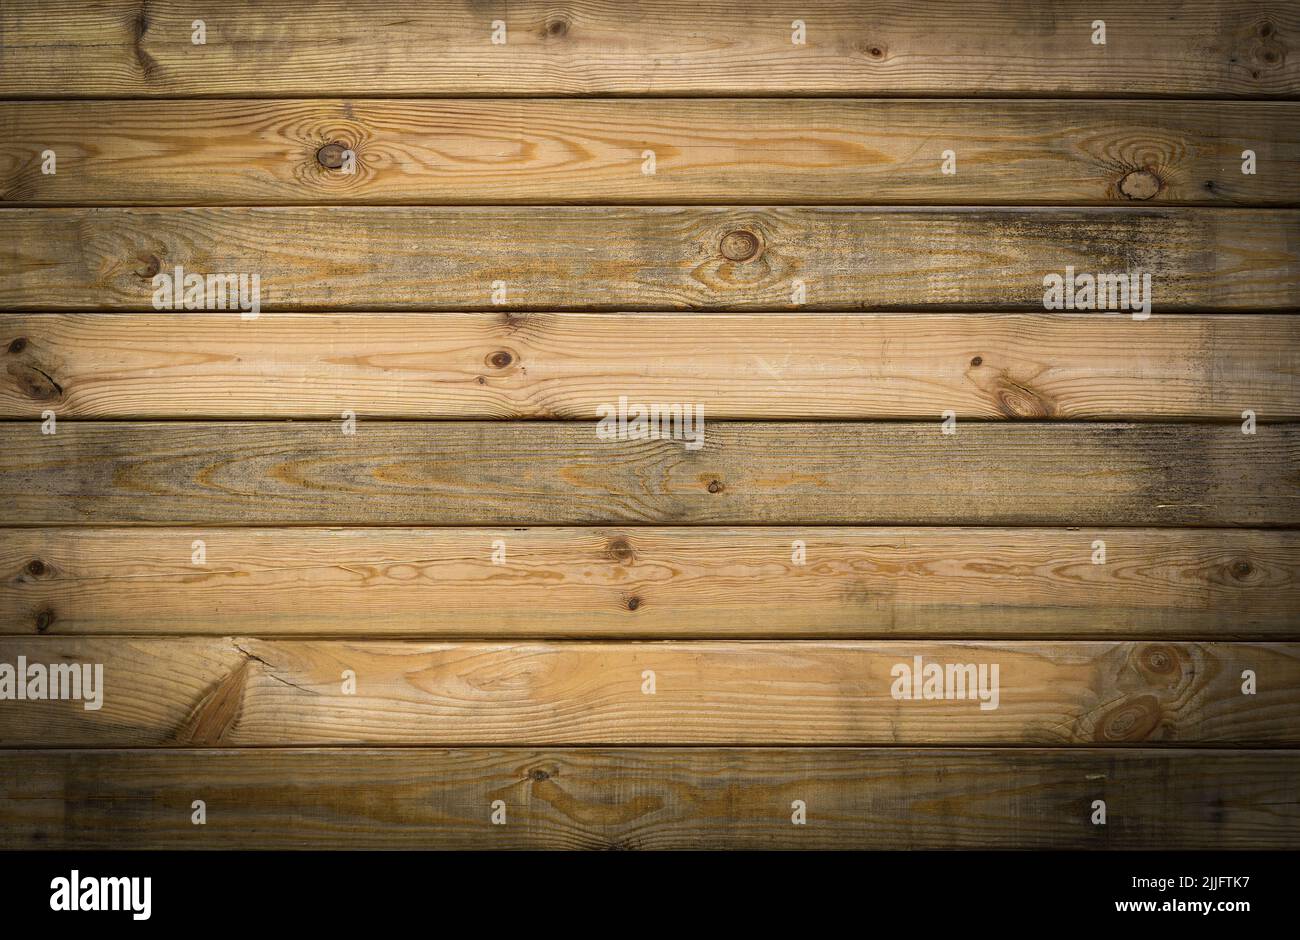 Tablones de madera pared de fondo. Paneles antiguos de madera rústica texturizada para paredes, interiores y construcción. Fotografía de alta calidad Foto de stock